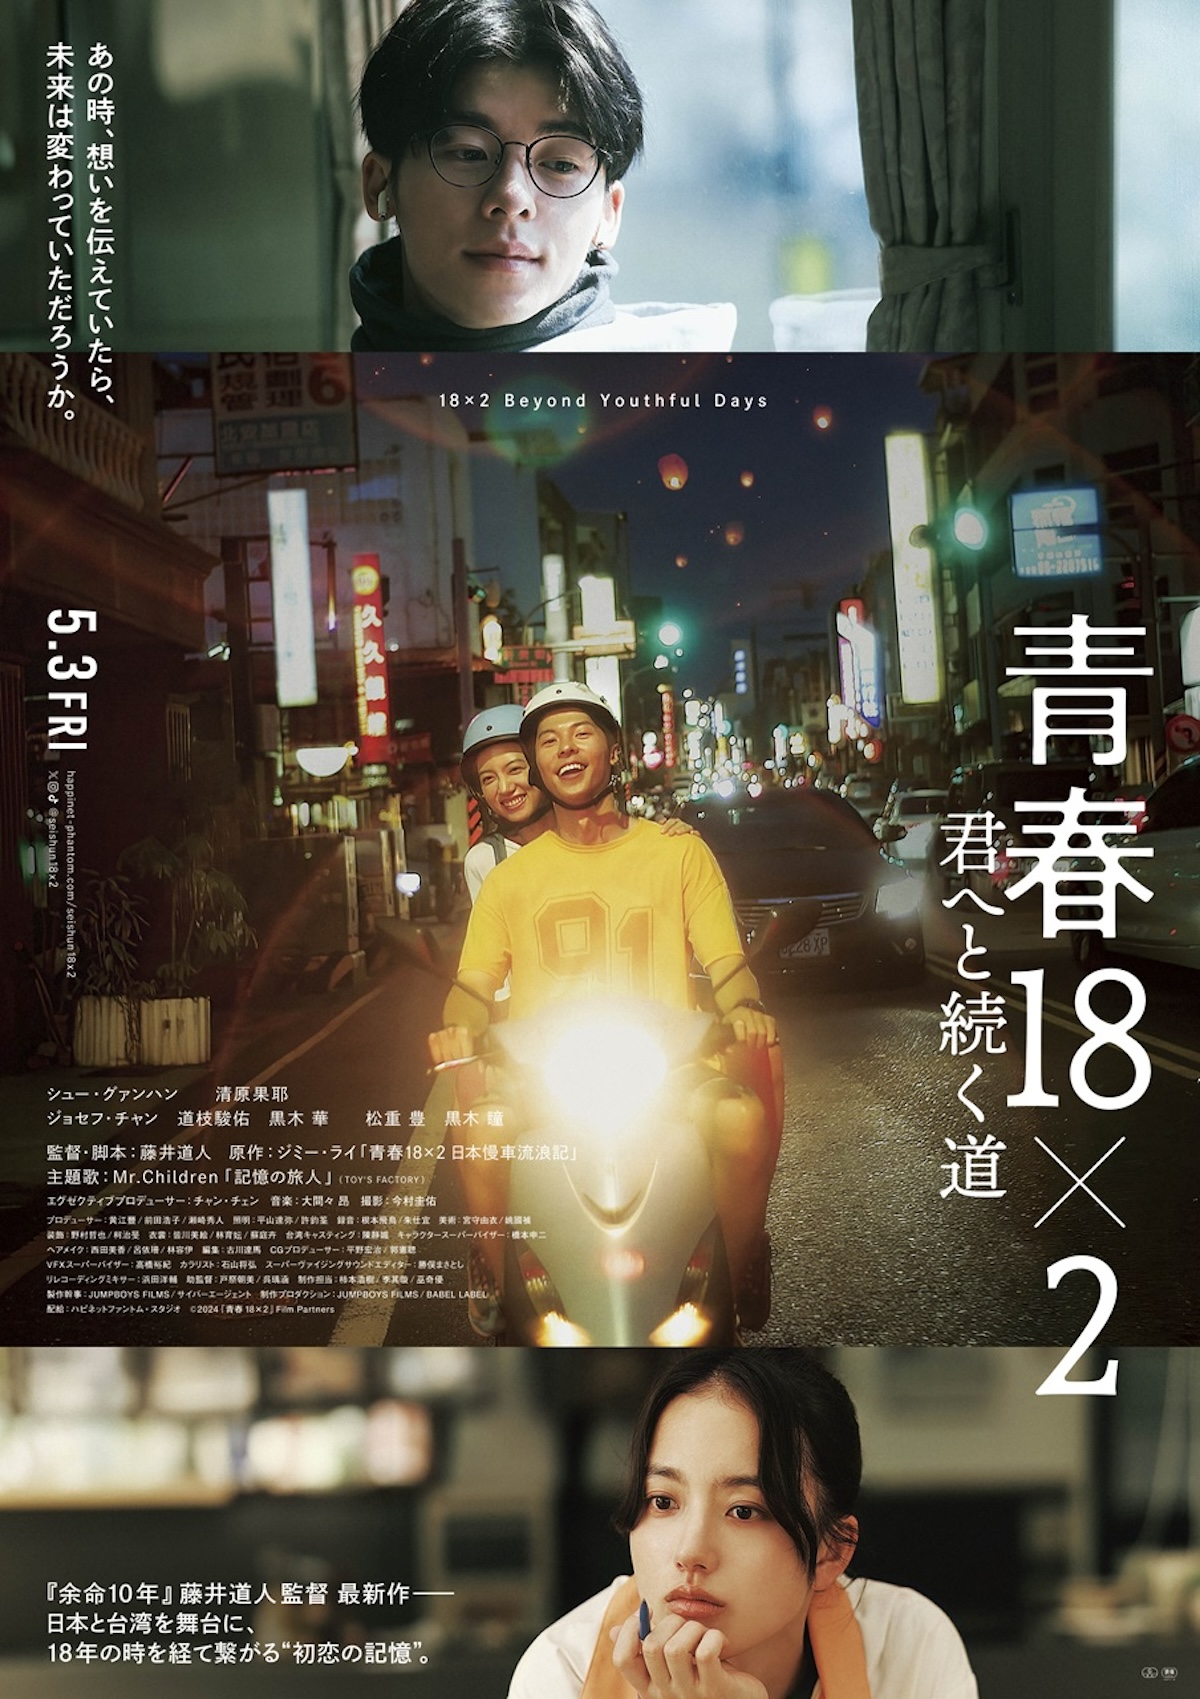 『青春18×2』本ビジュアル＆香港映画祭へ